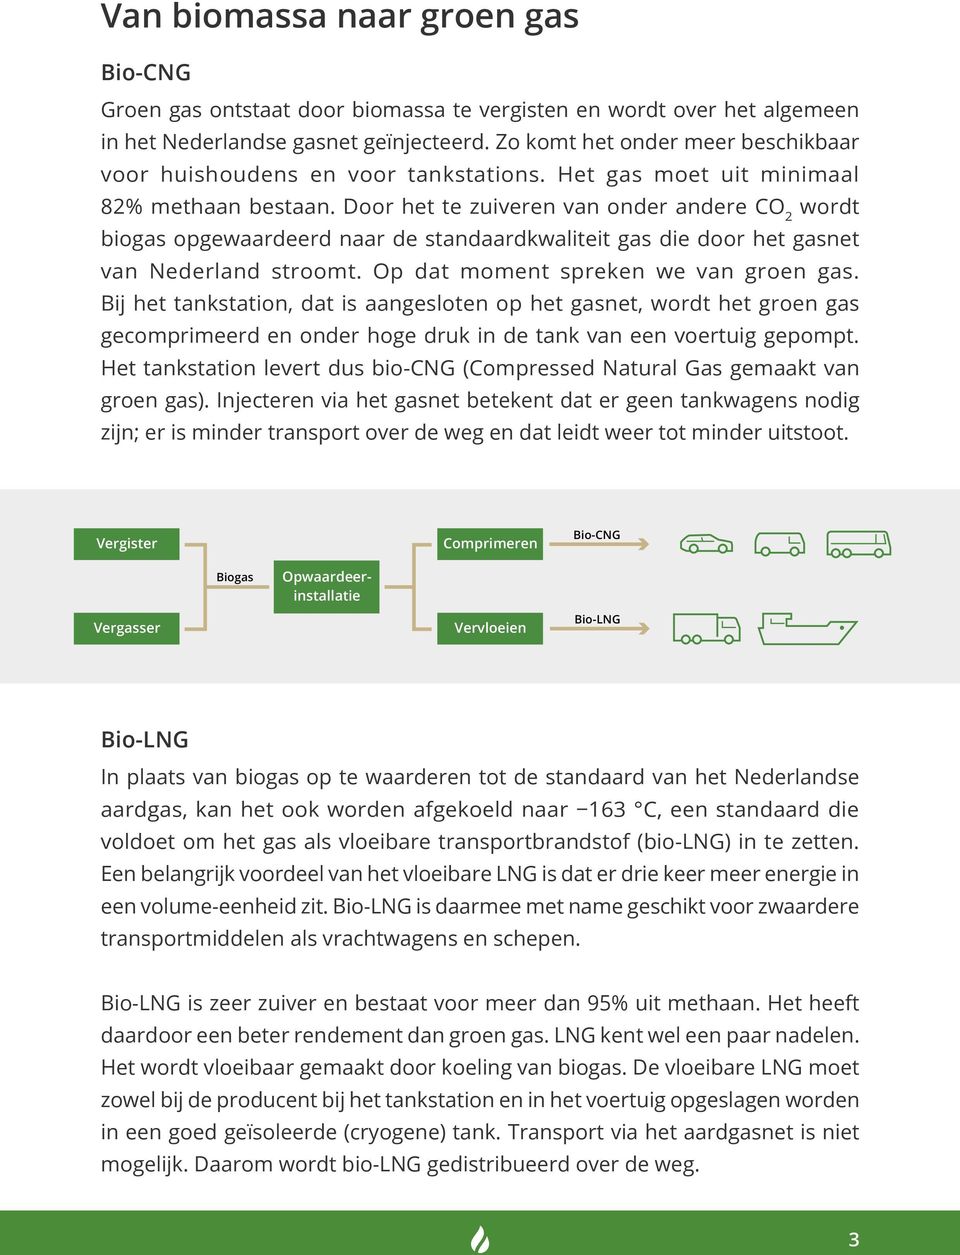 Door het te zuiveren van onder andere CO 2 wordt biogas opgewaardeerd naar de standaardkwaliteit gas die door het gasnet van Nederland stroomt. Op dat moment spreken we van groen gas.